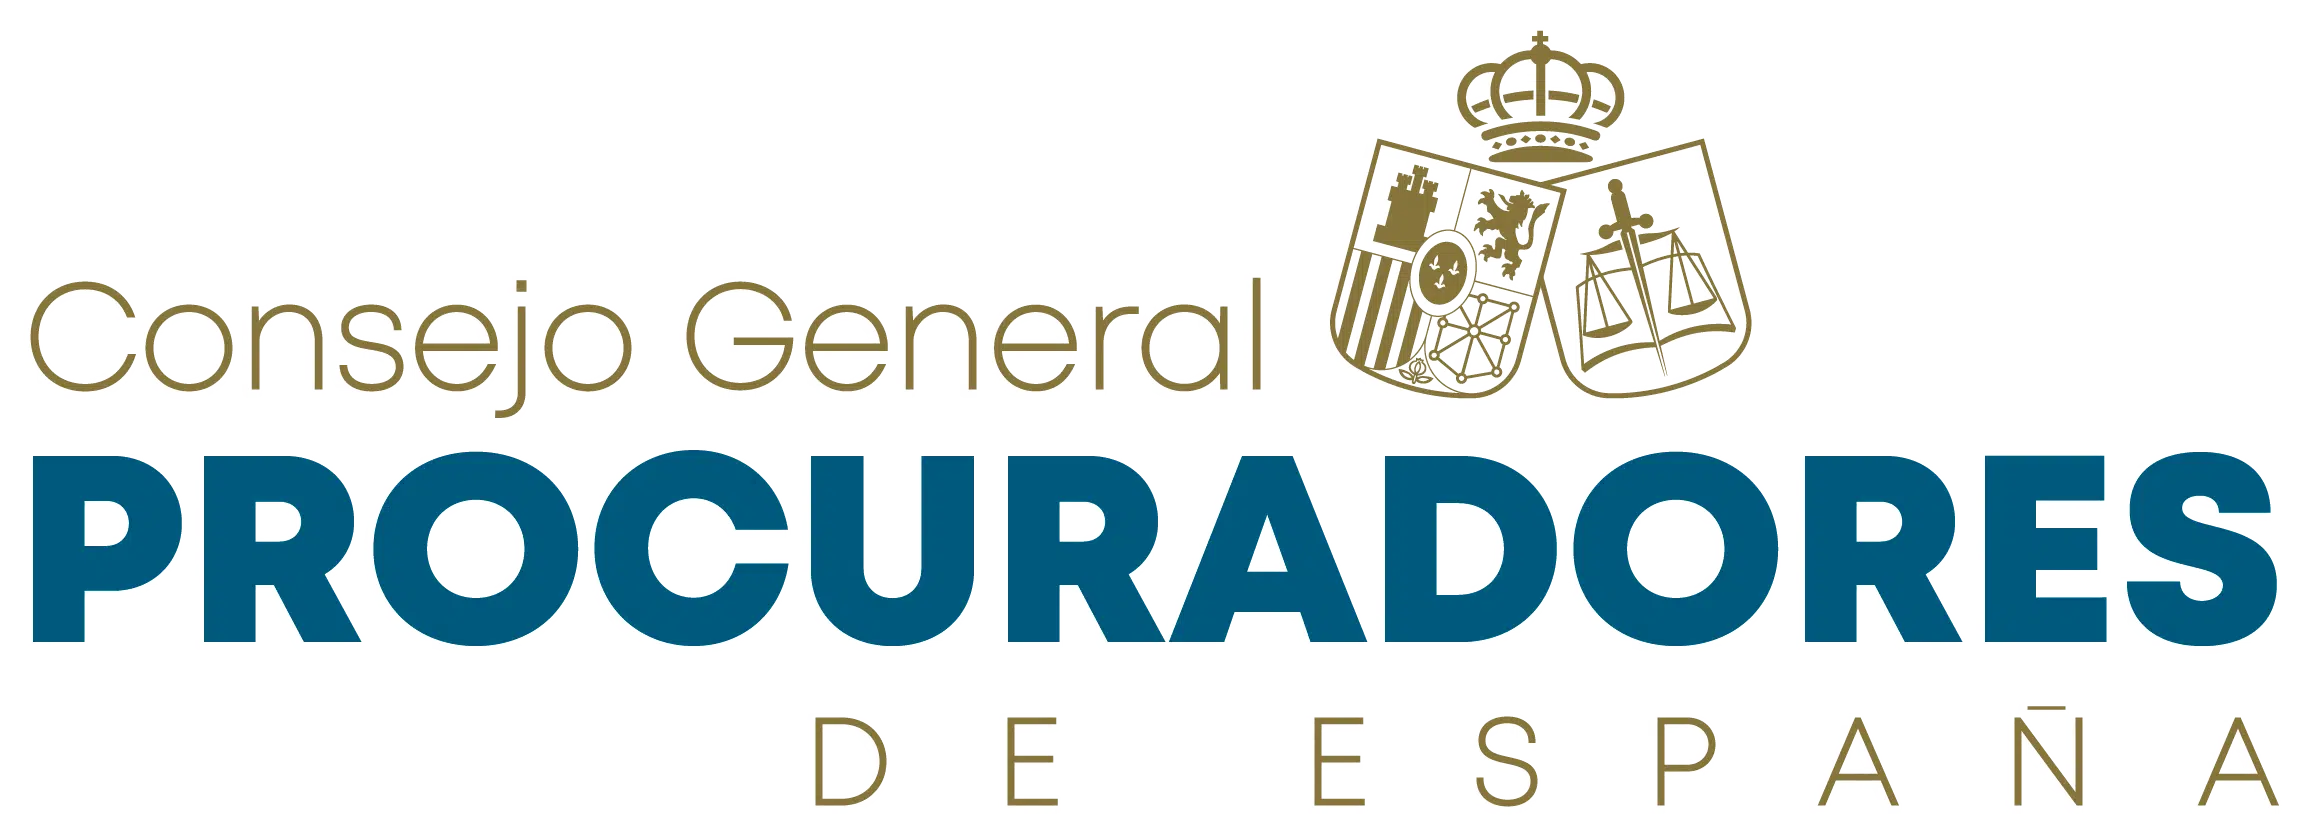 Consejo General de Procuradores de España (CGPE)